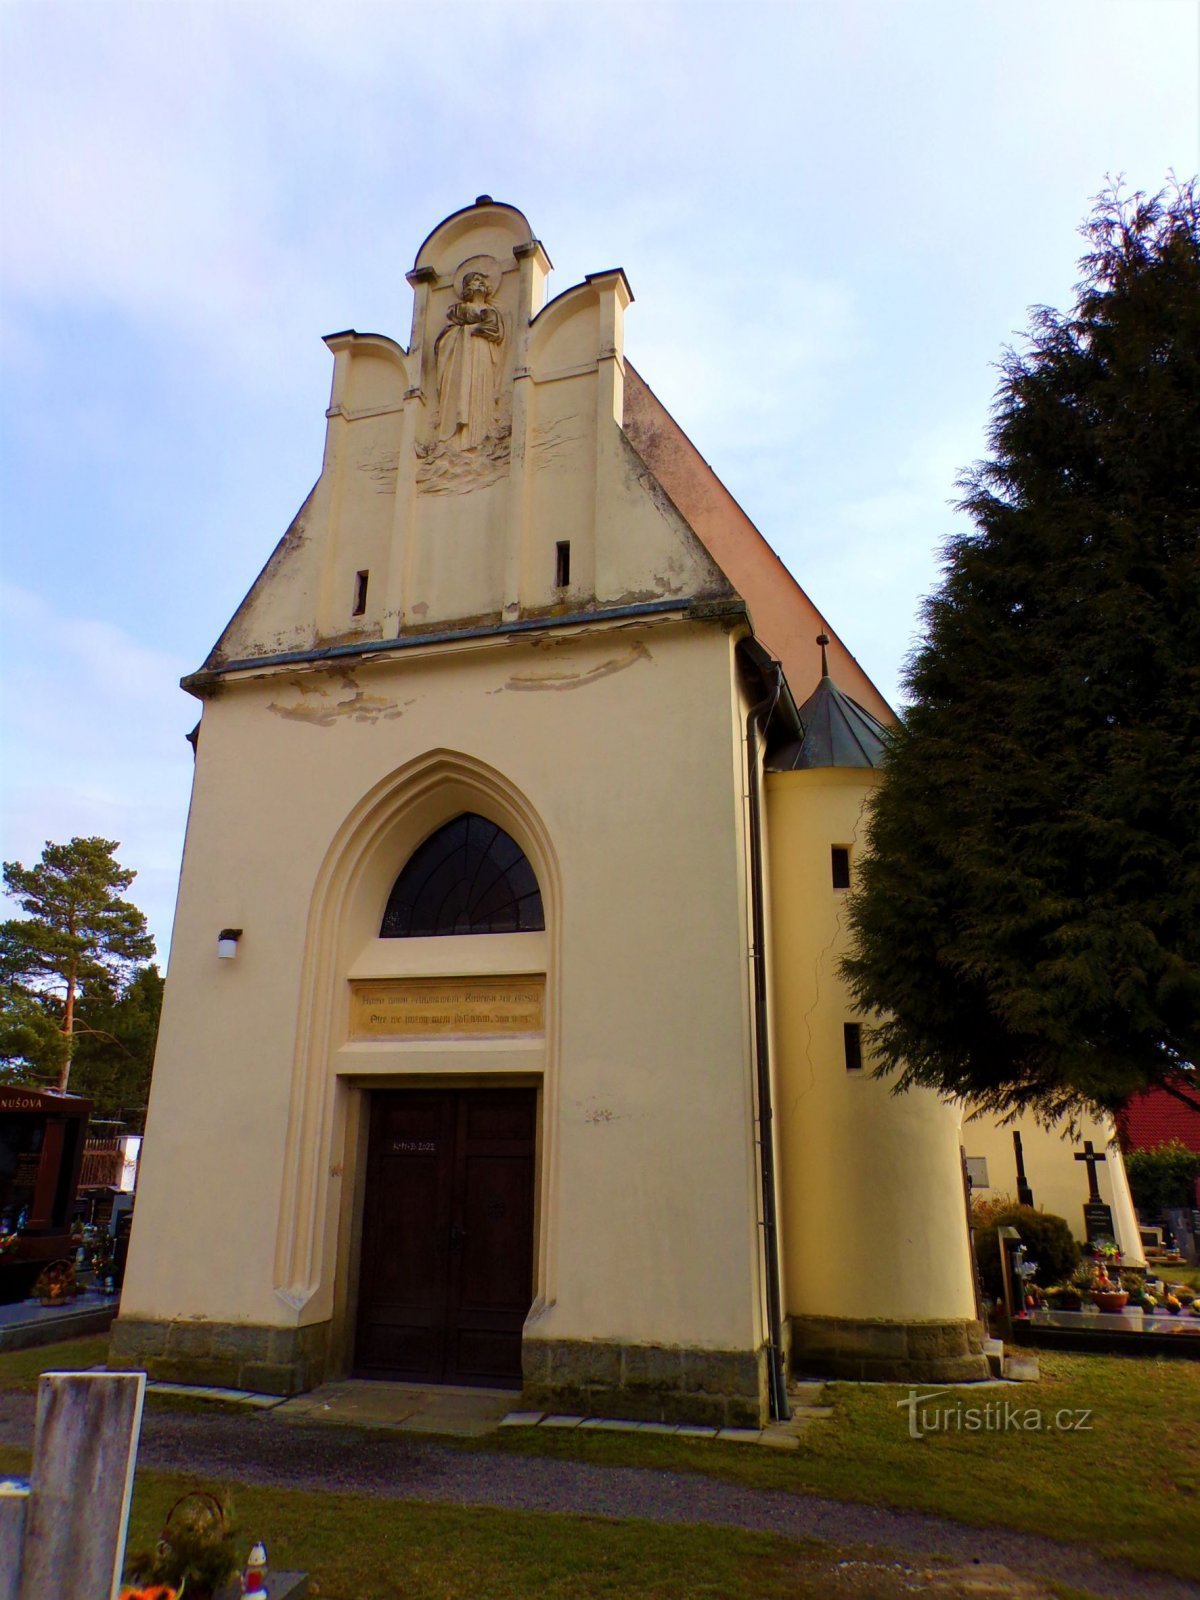 Igreja de St. Jiljí, abade (Pardubice, 16.2.2022/XNUMX/XNUMX)